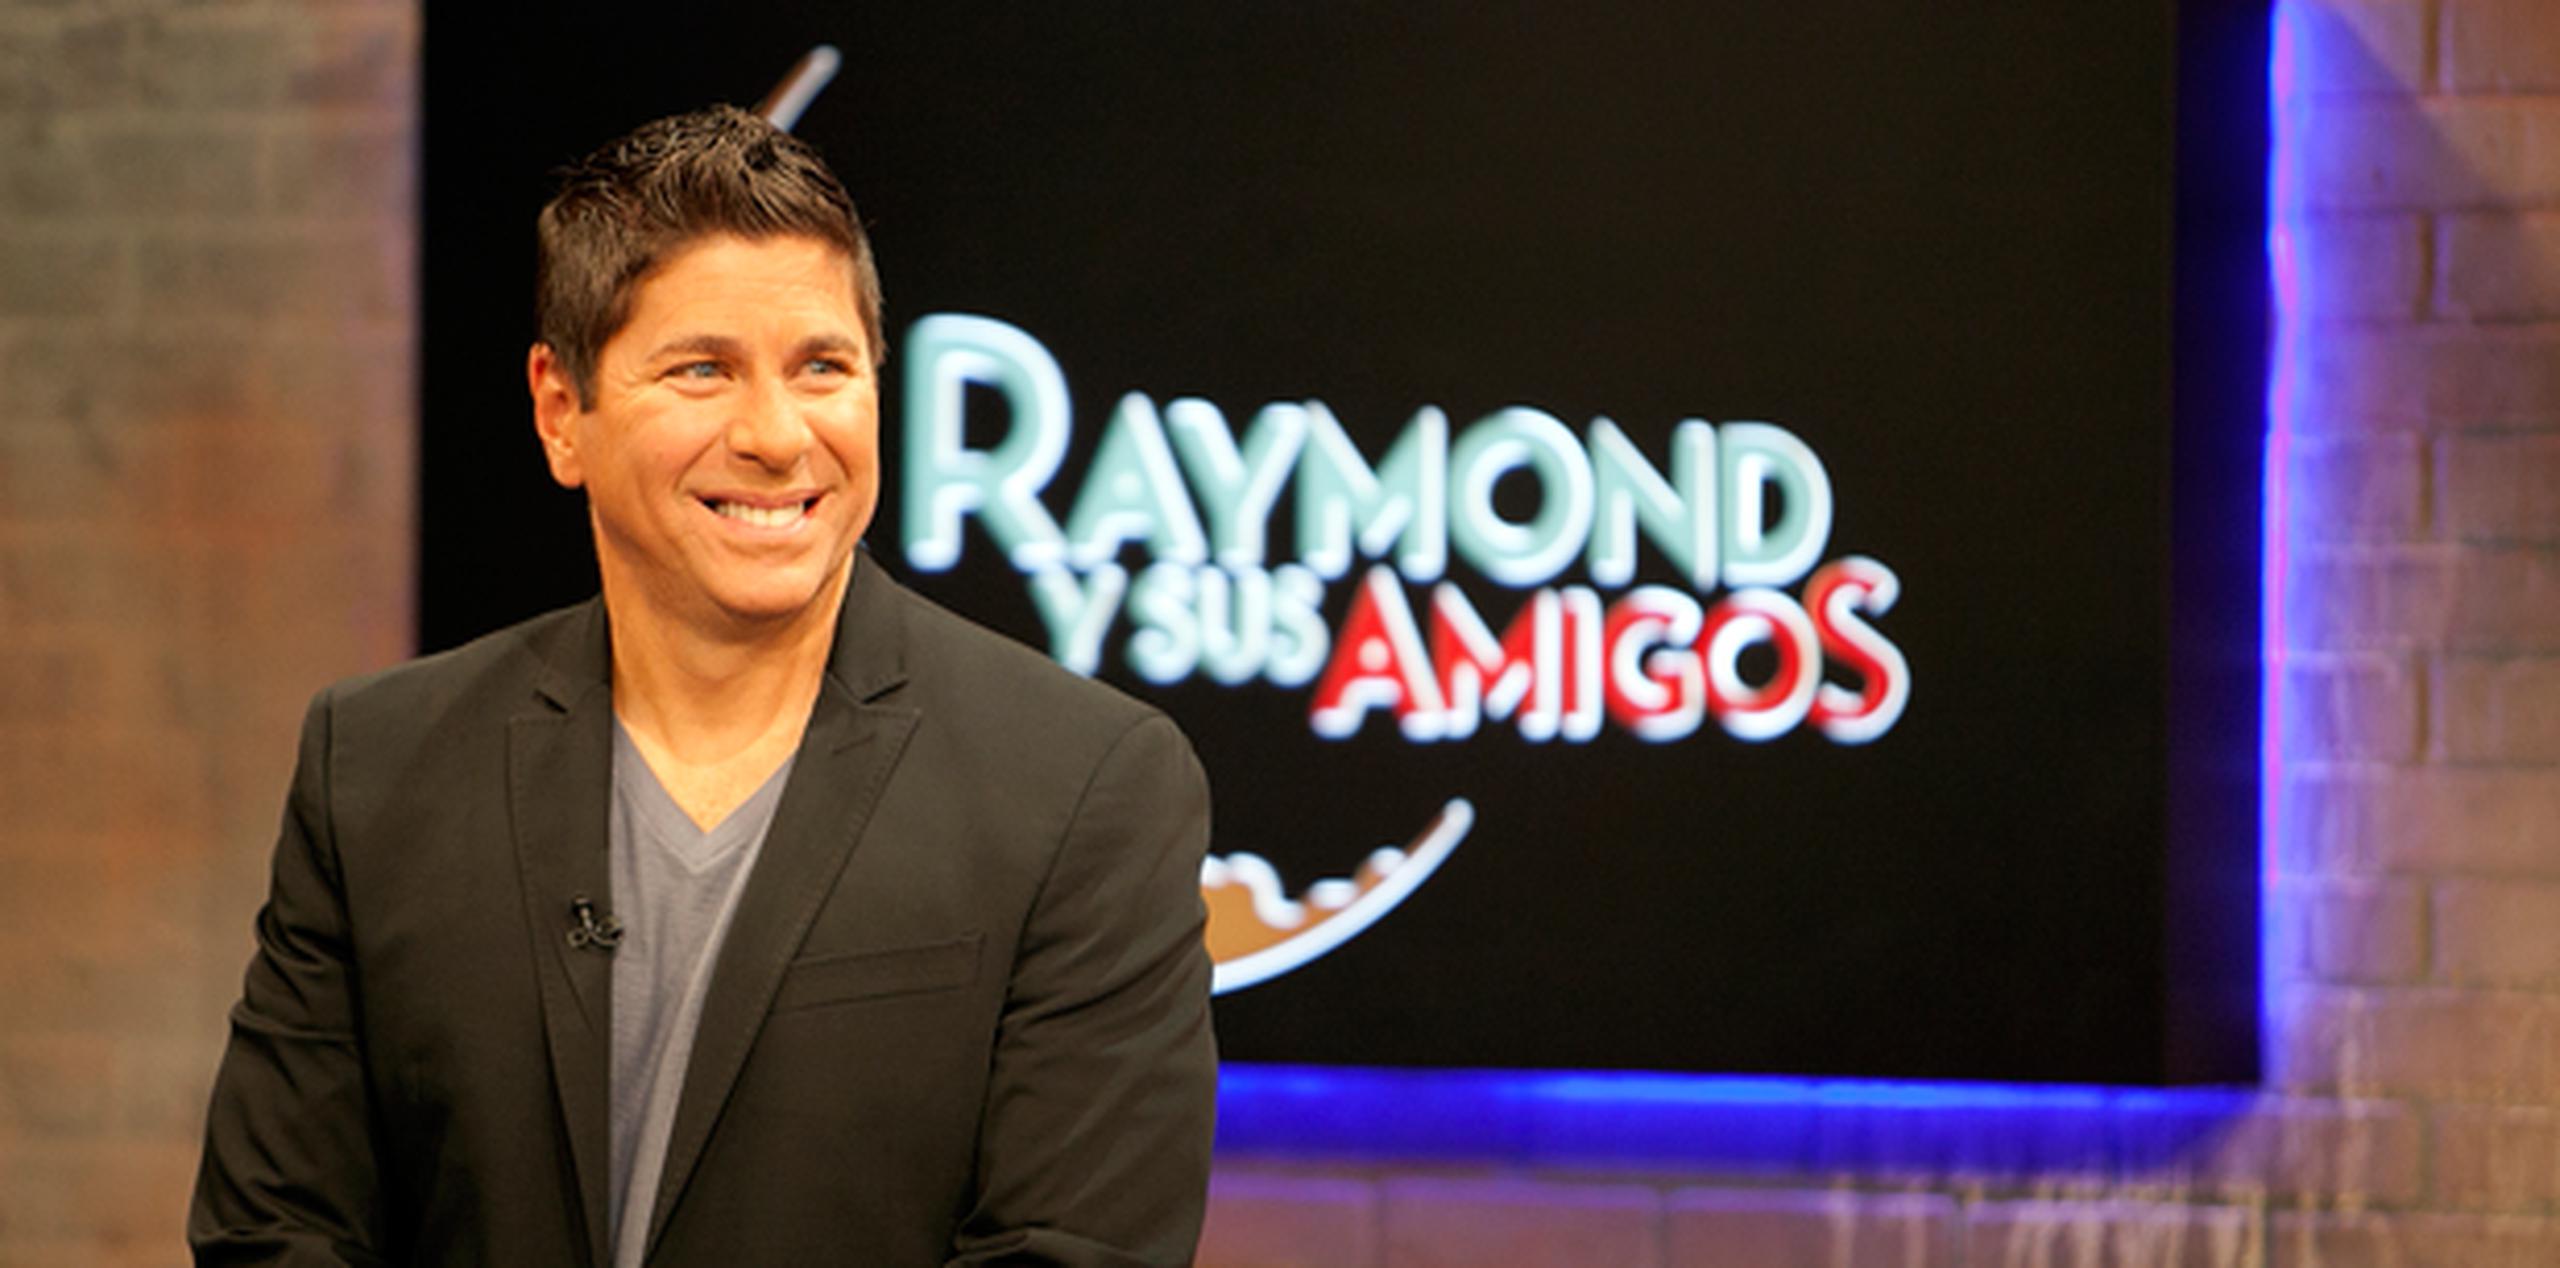 "Raymond y sus amigos" se transmite los martes a las 8:00 p.m. por Telemundo. (Archivo)